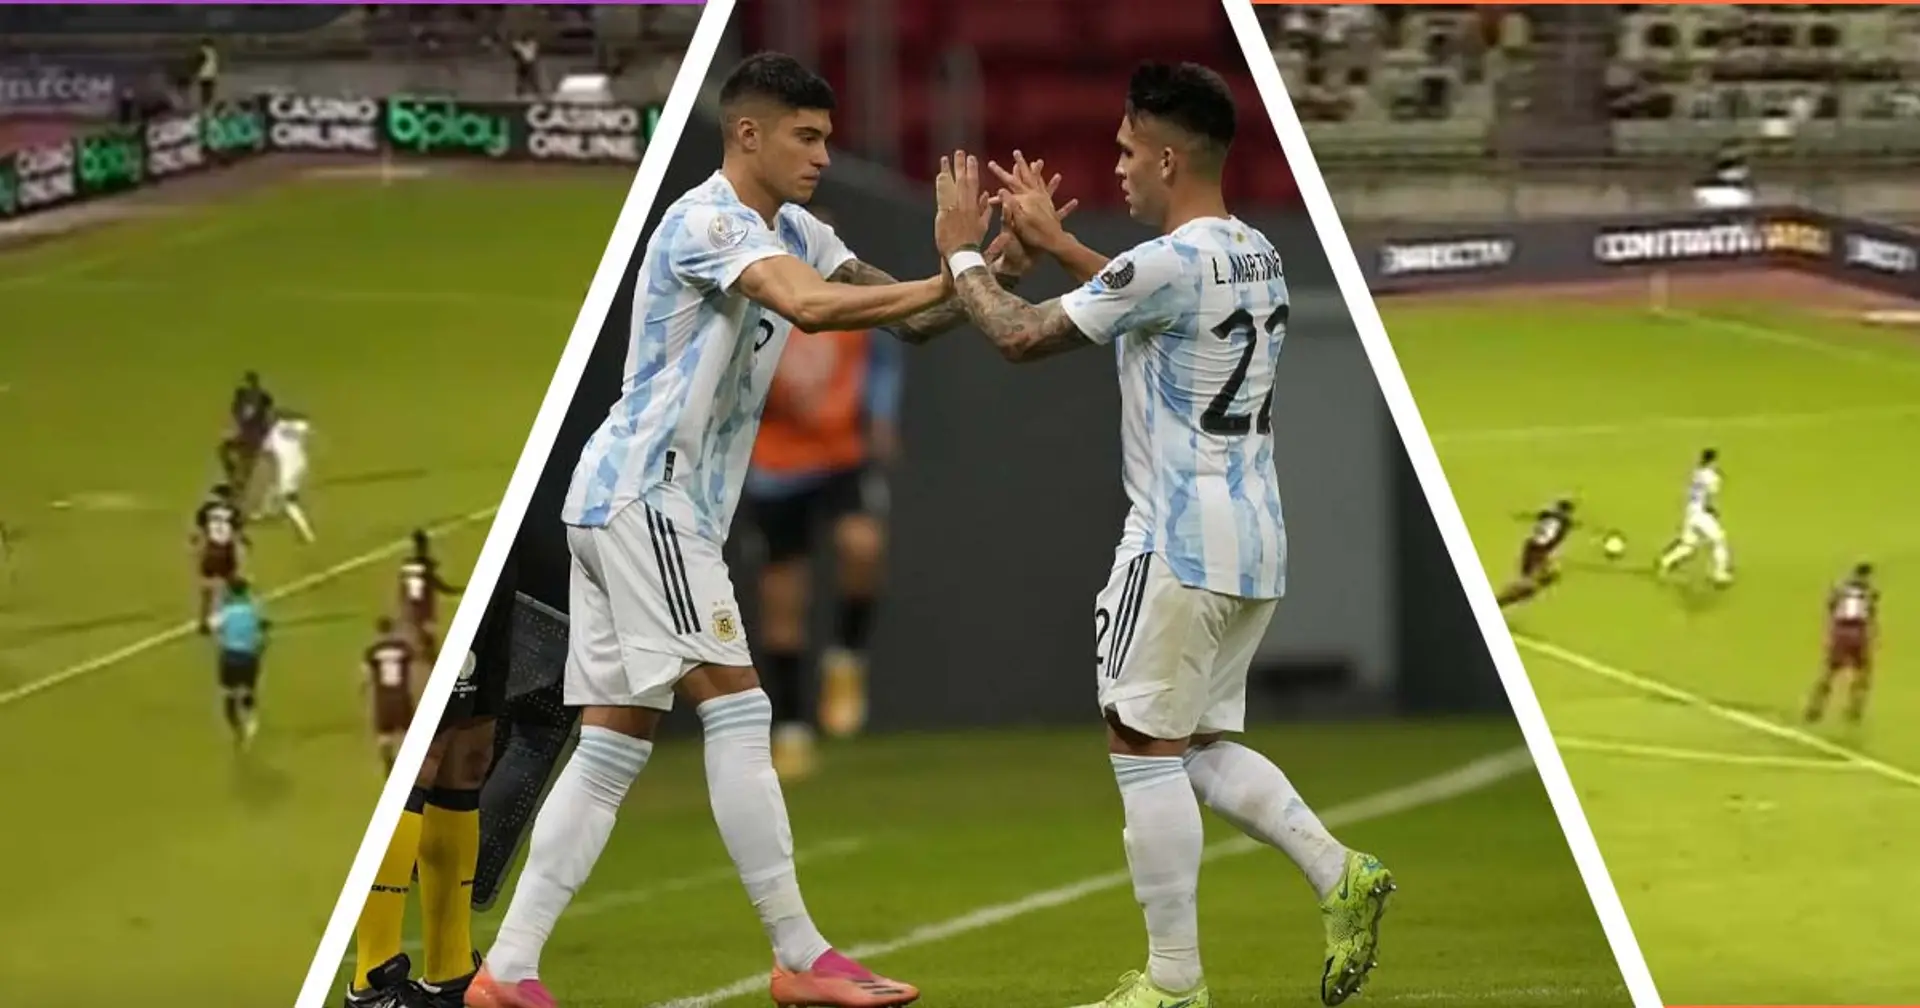 Lautaro Martinez e Correa trascinano l'Argentina: i due gol in 4 istantanee